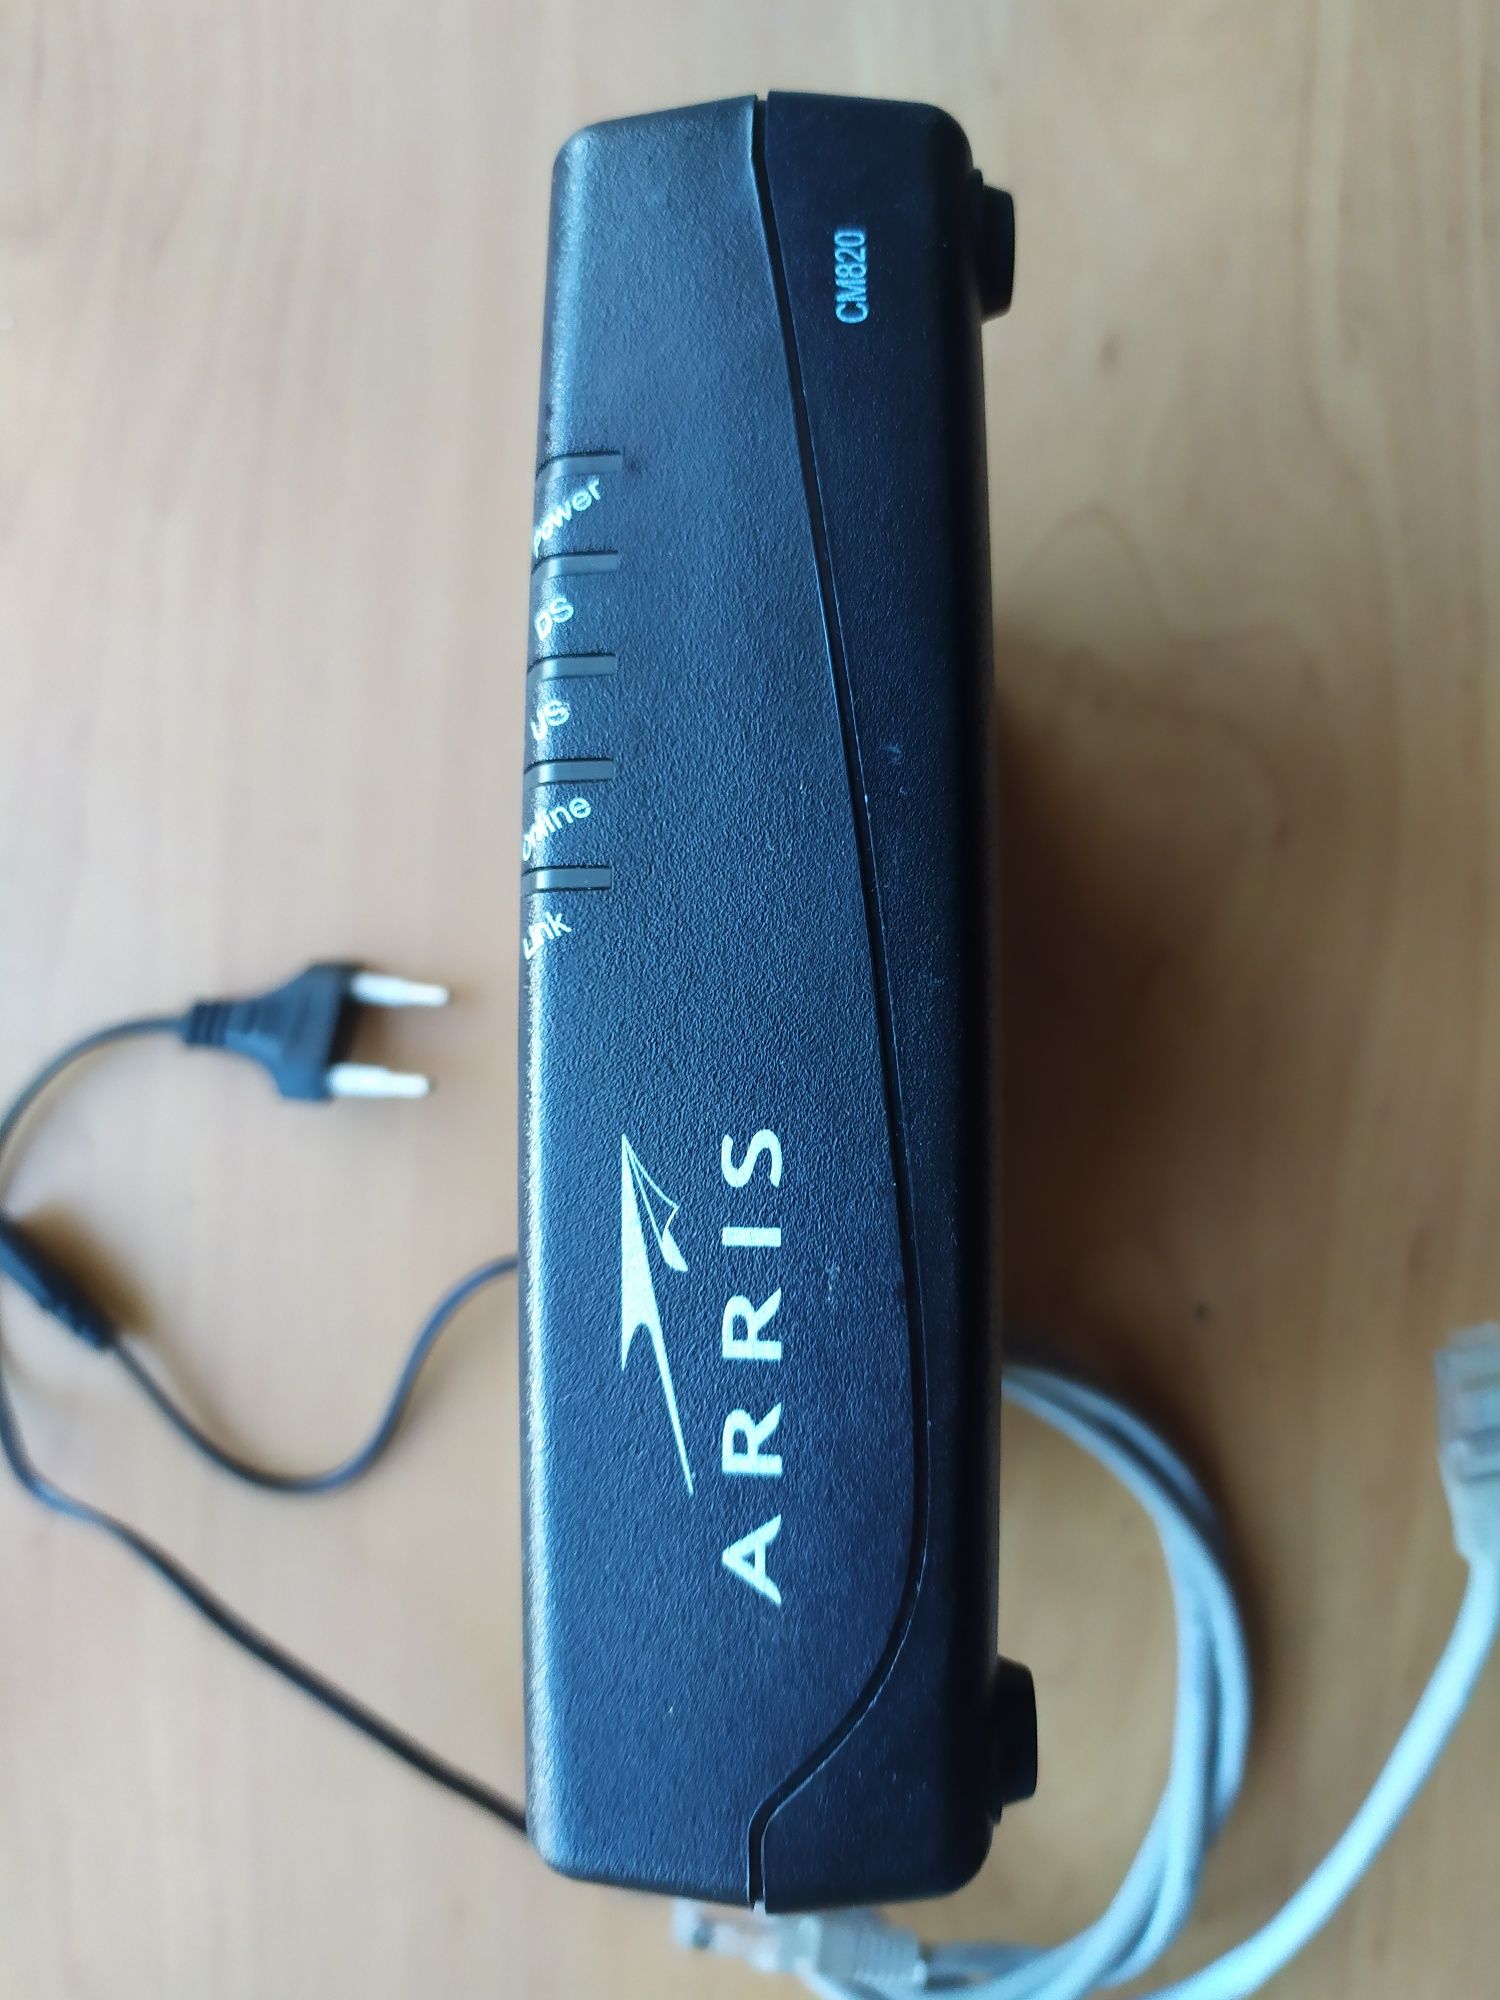 Кабельный модем ARRIS модель СМ820В